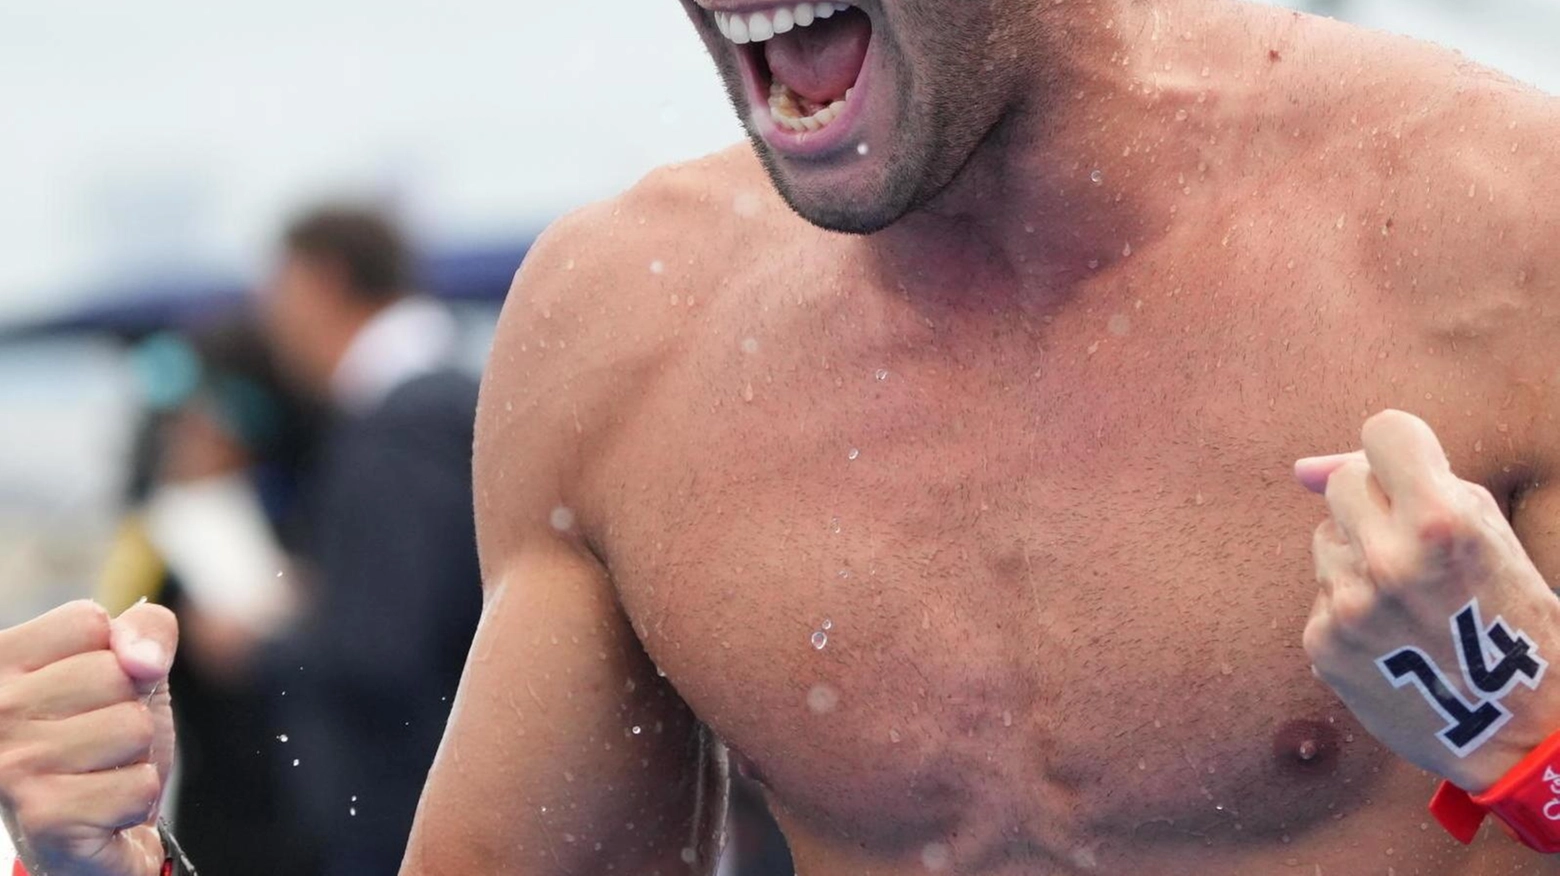 Gregorio Paltrinieri, veterano azzurro del nuoto, si prepara per la sua quarta Olimpiade a Parigi con l'obiettivo di superare le medaglie conquistate a Tokyo e dimostrare la sua forza e esperienza.